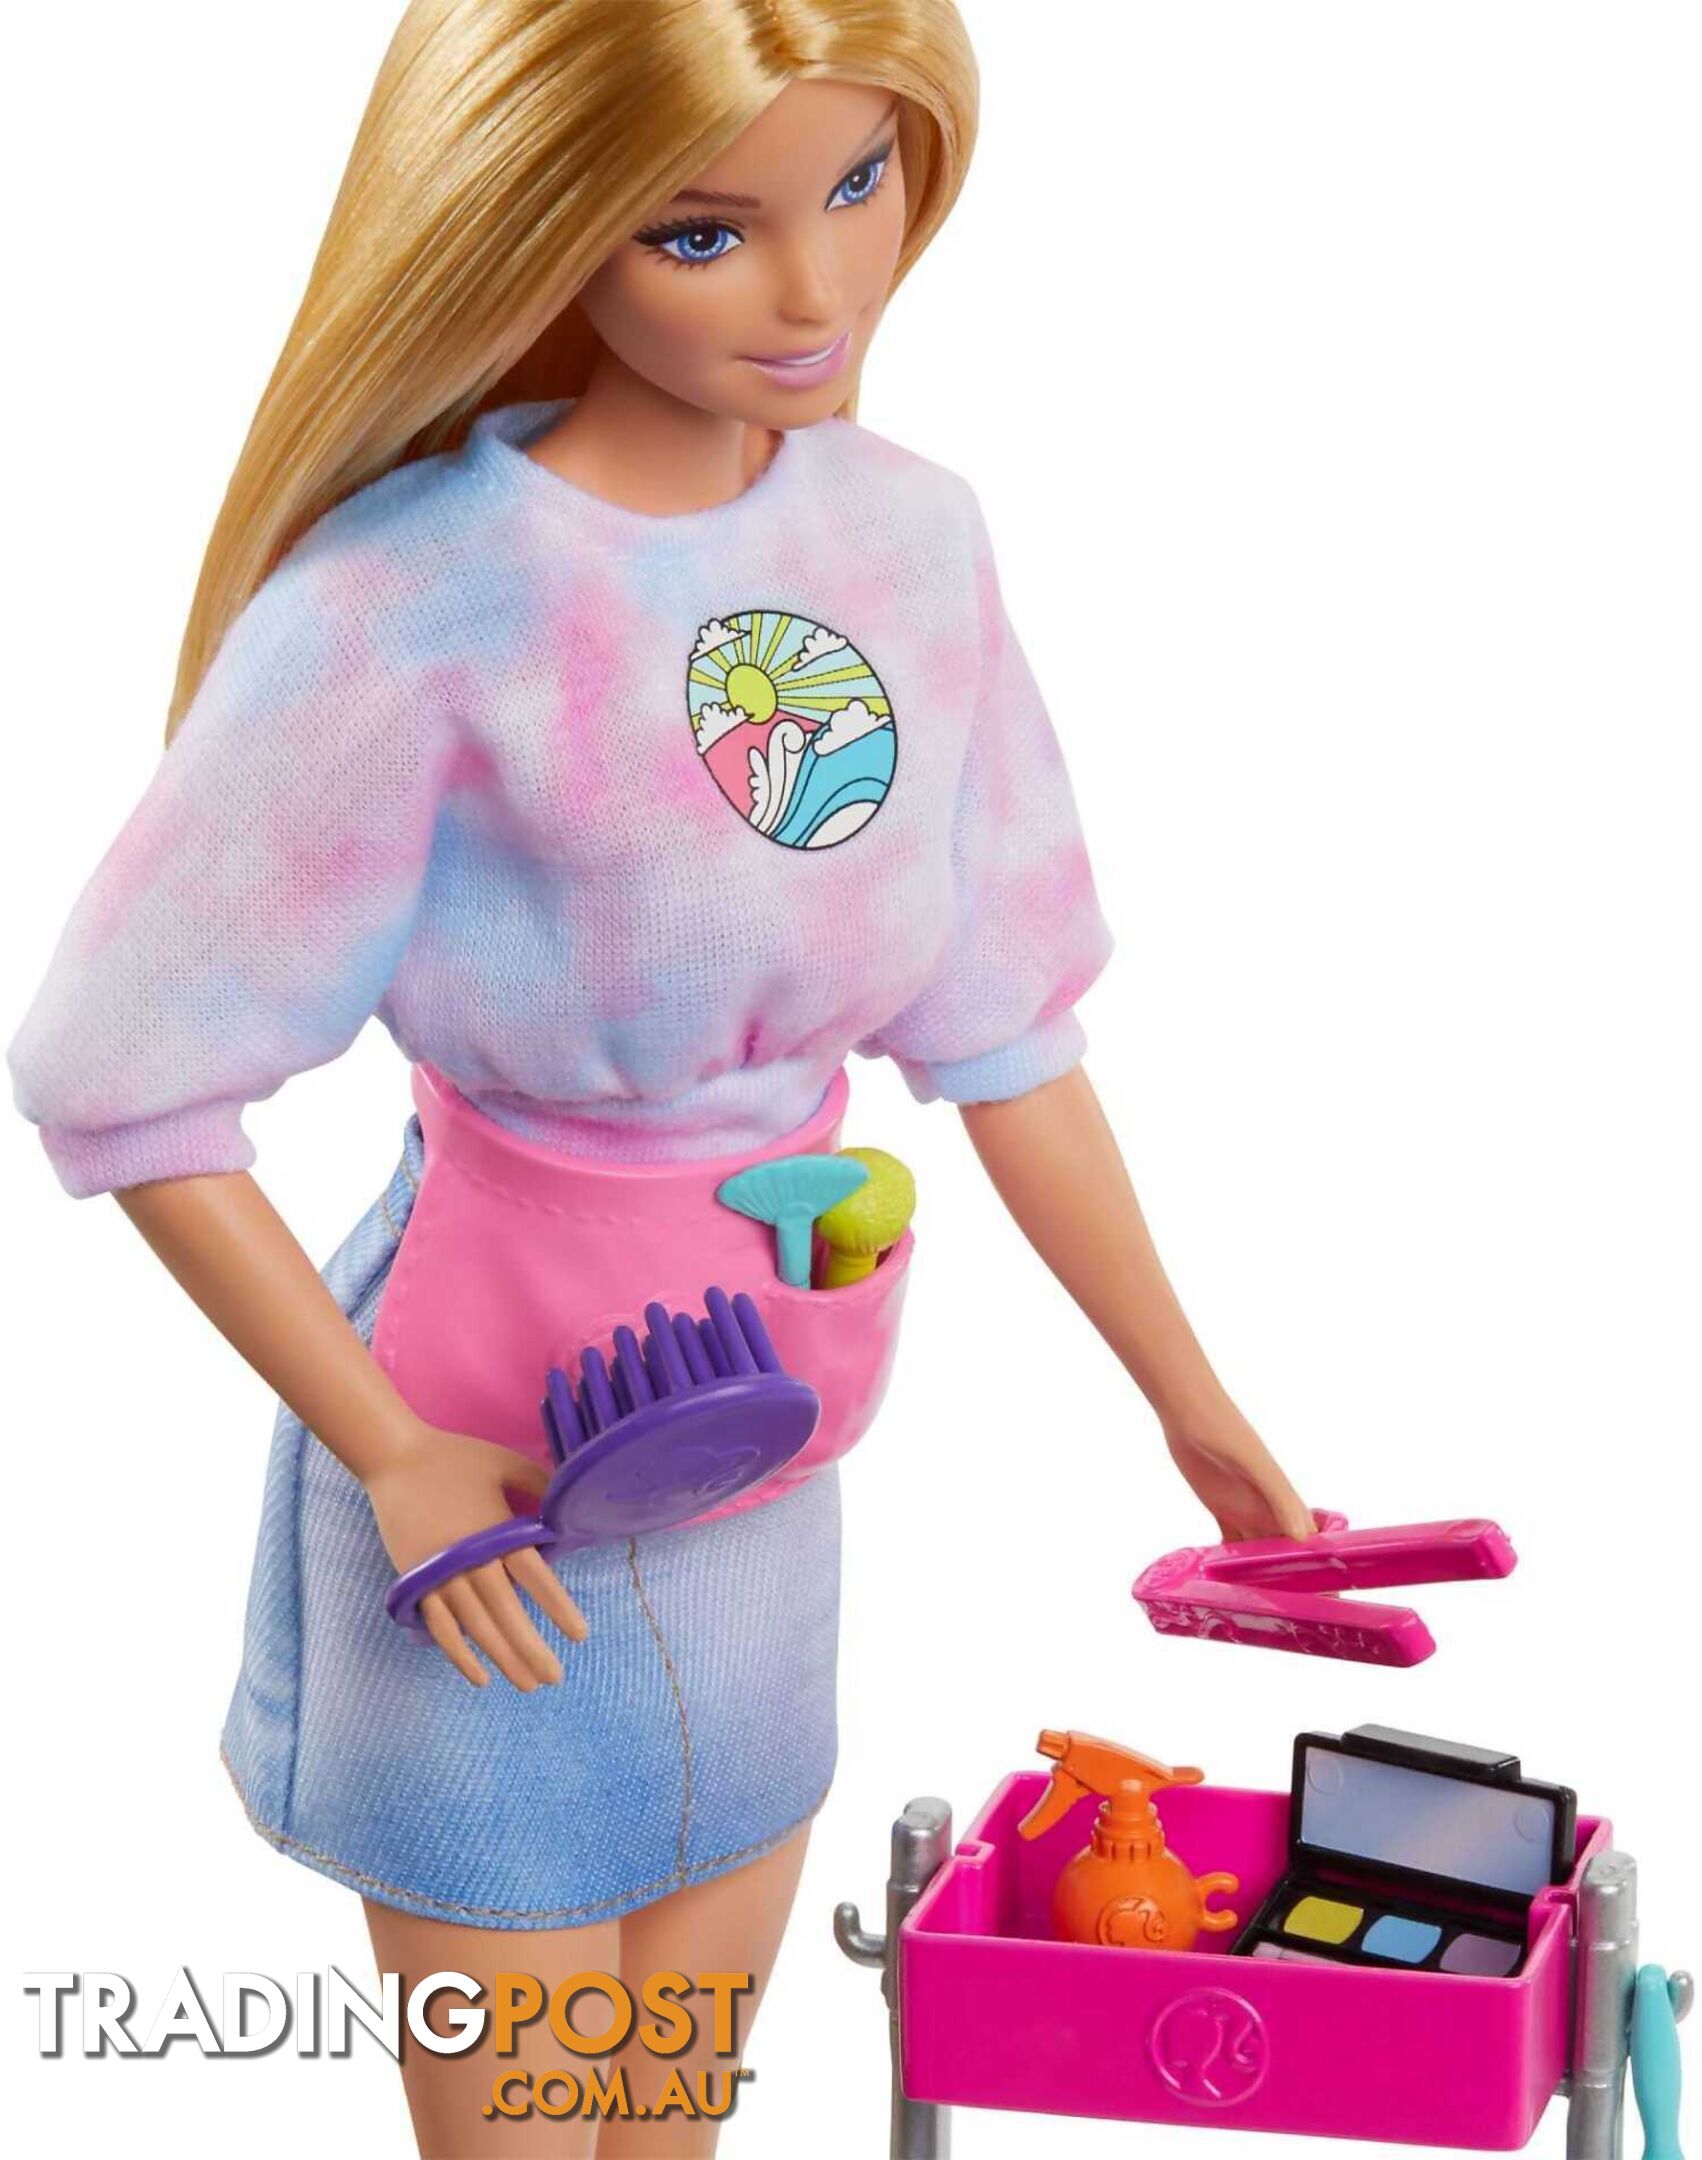 Barbie - â€œmalibuâ€ Stylist Doll & 14 Accessories Playset Hair & Makeup Theme With Puppy & Styling Cart - Mattel - Mahnk95 - 194735143429